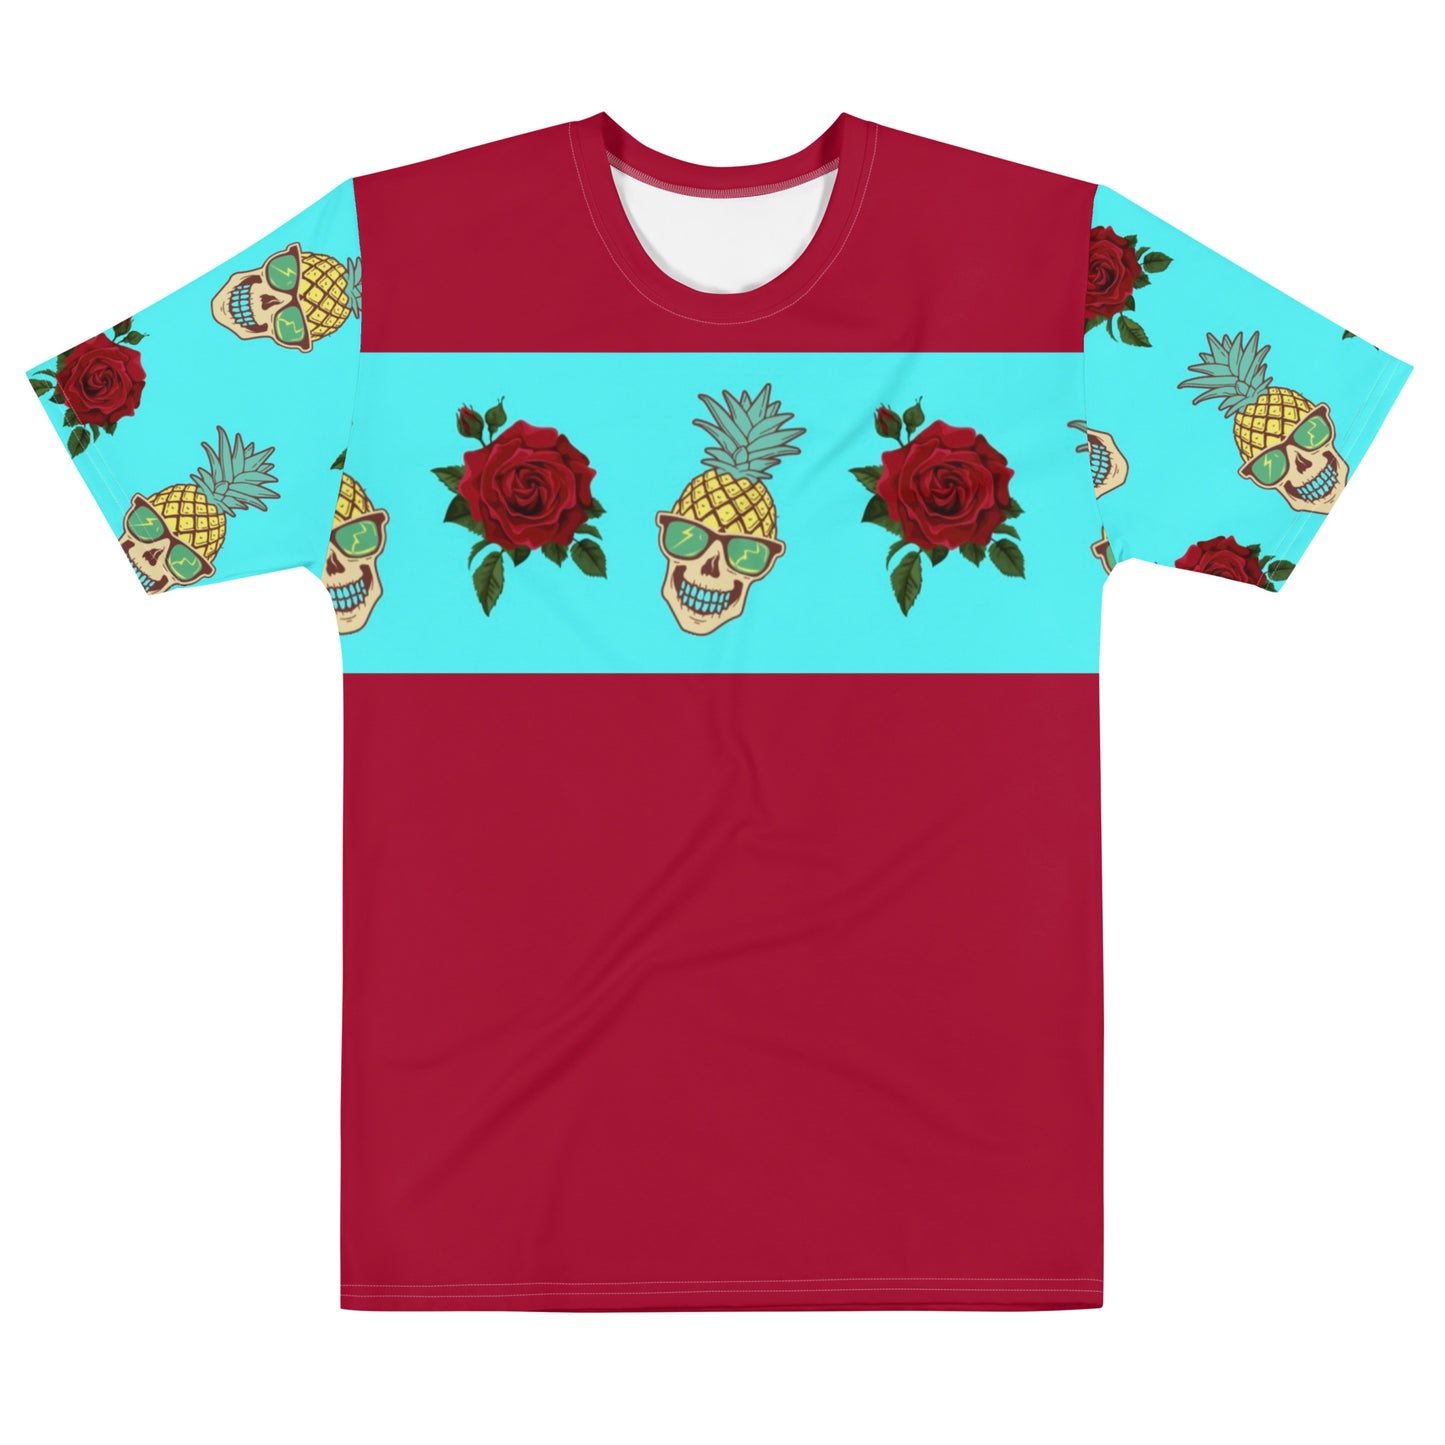 Maadish | Skulls & Roses t-shirt